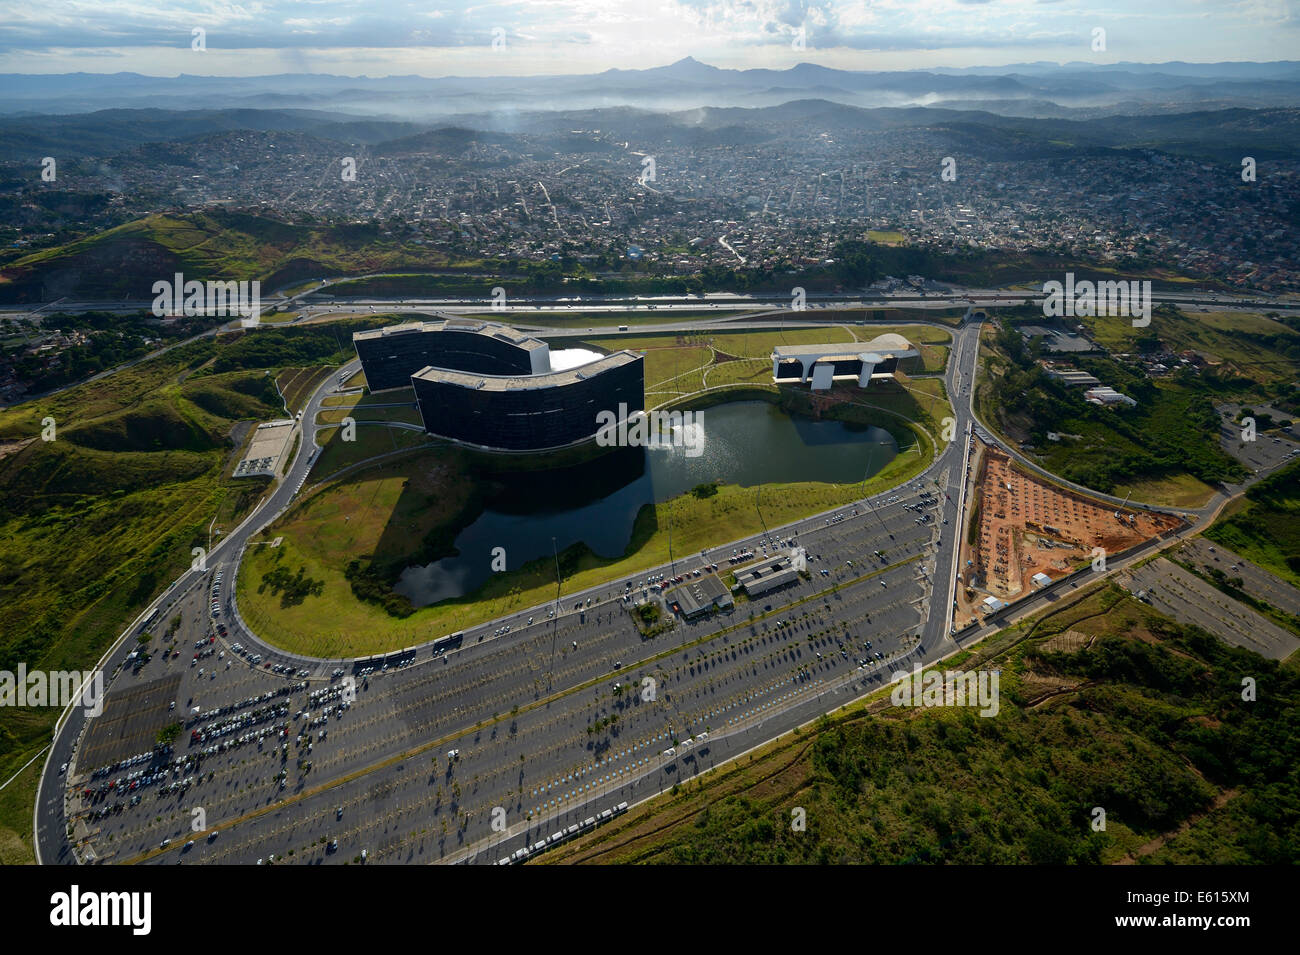 Regionale Regierung Verwaltungszentrum, Cidade Administrativa, Architekt Oscar Niemeyer, Belo Horizonte, Minas Gerais, Brasilien Stockfoto